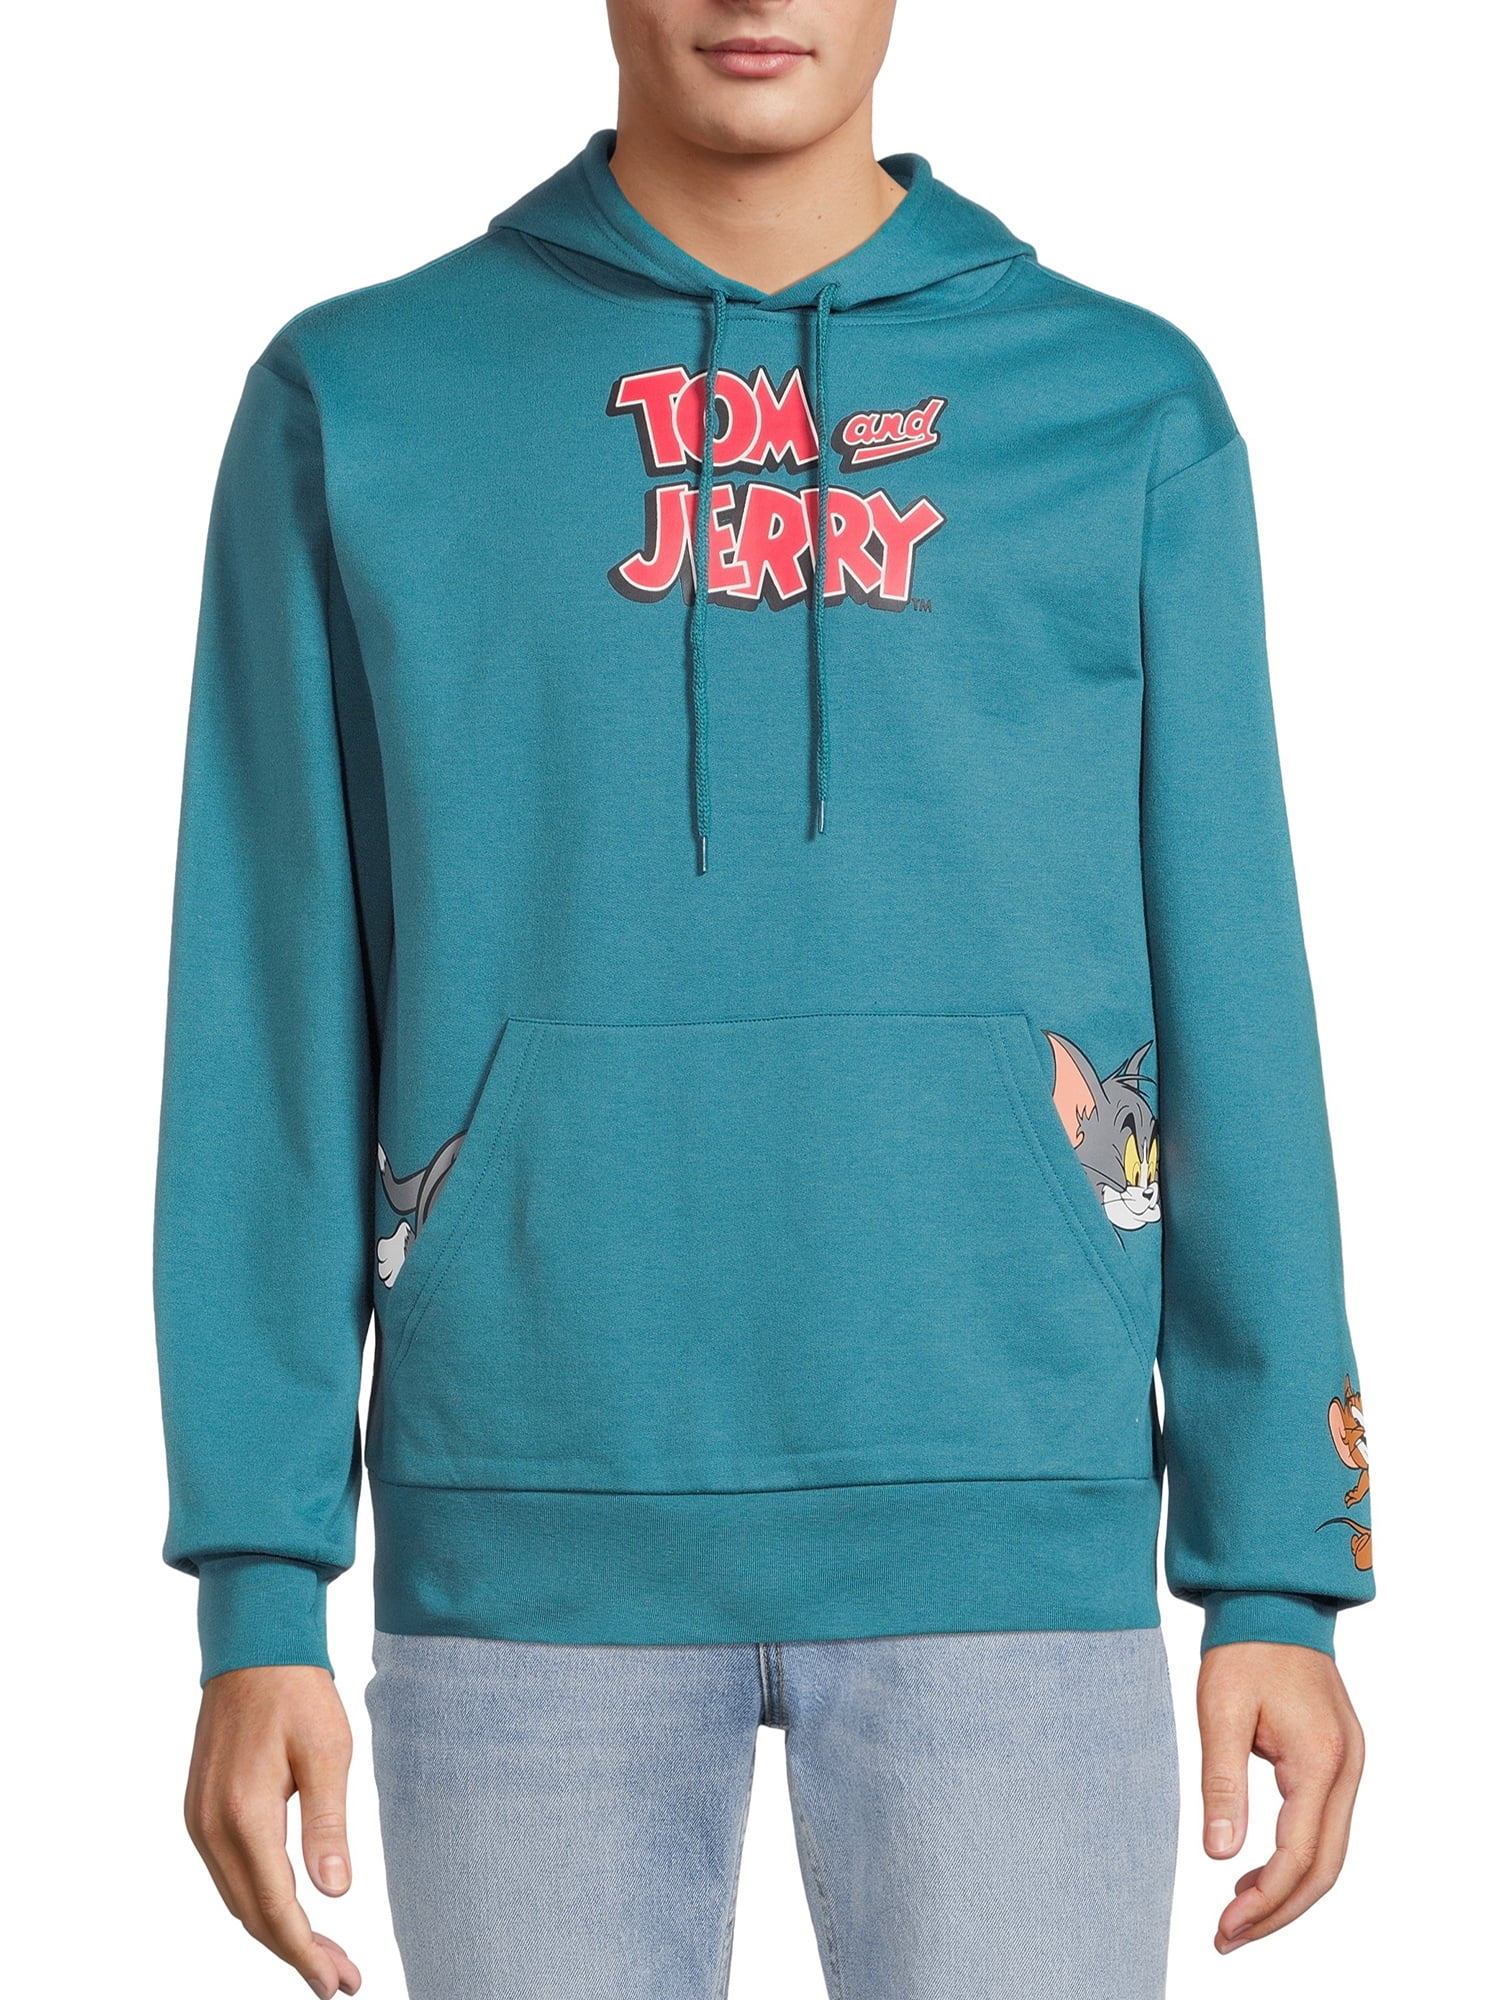 Tom and Jerry Men's & Big Men's Graphic Hoodie - Walmart.com